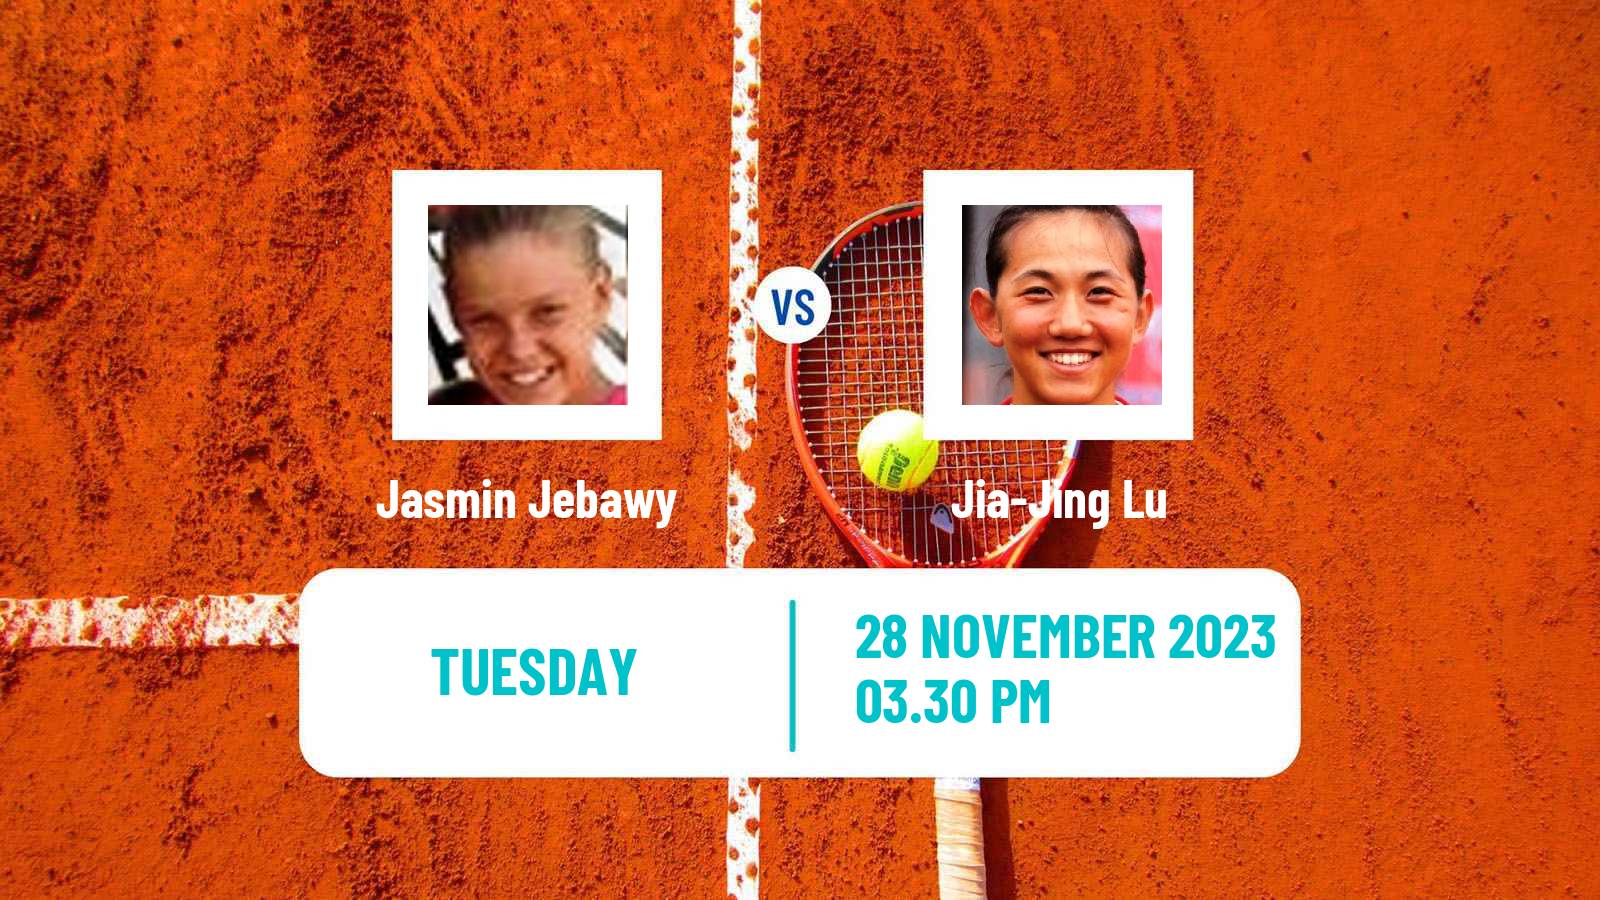 Tennis ITF W40 Veracruz Women Jasmin Jebawy - Jia-Jing Lu